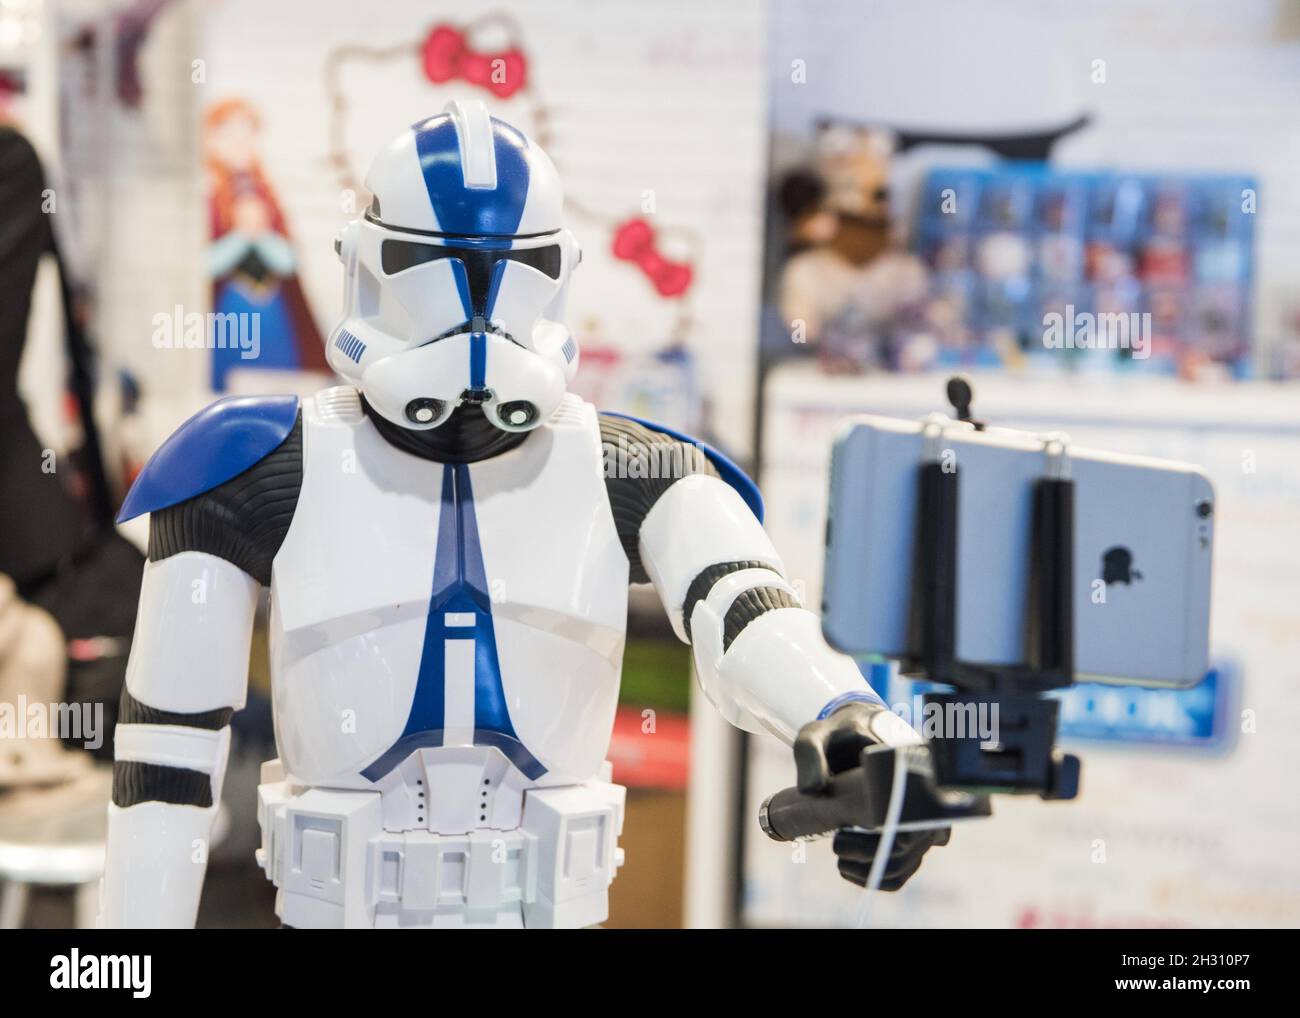 Modèle Star Wars figure prend un selfie le jour 3 du GSMA Mobile World Congress 2016, FIA Gran via - Barcelone Banque D'Images